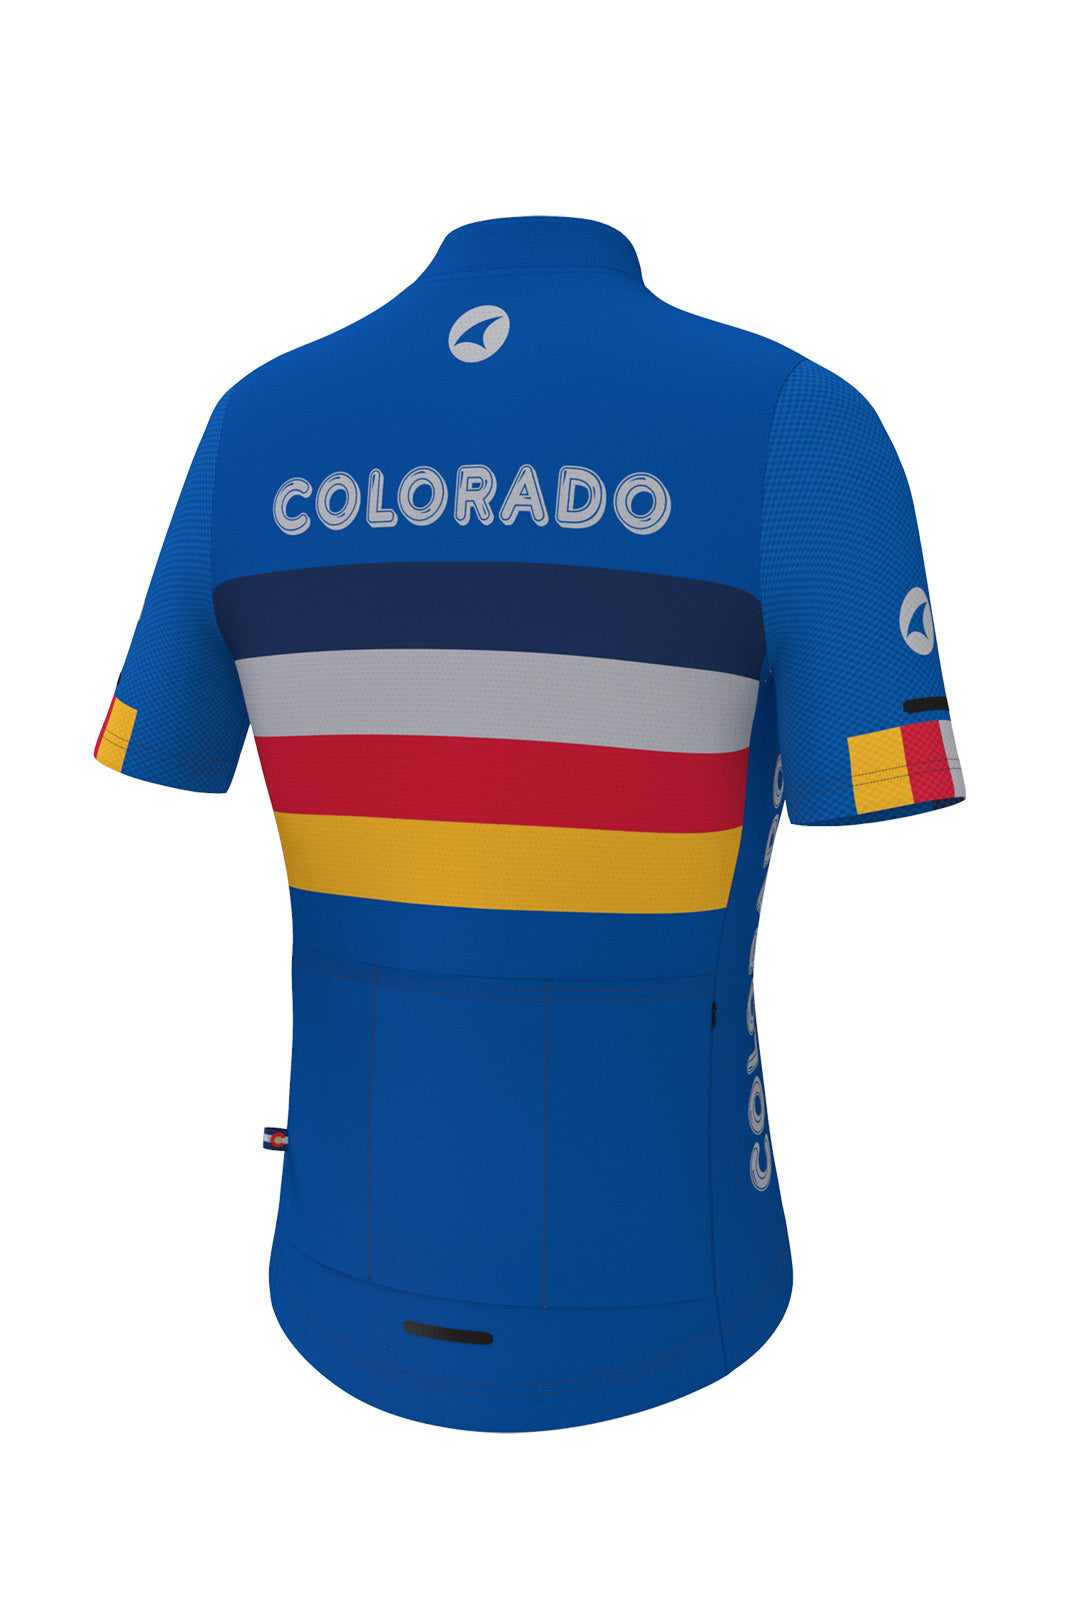 Women's Retro Colorado Cycling Jersey - Ascent Aero Back View